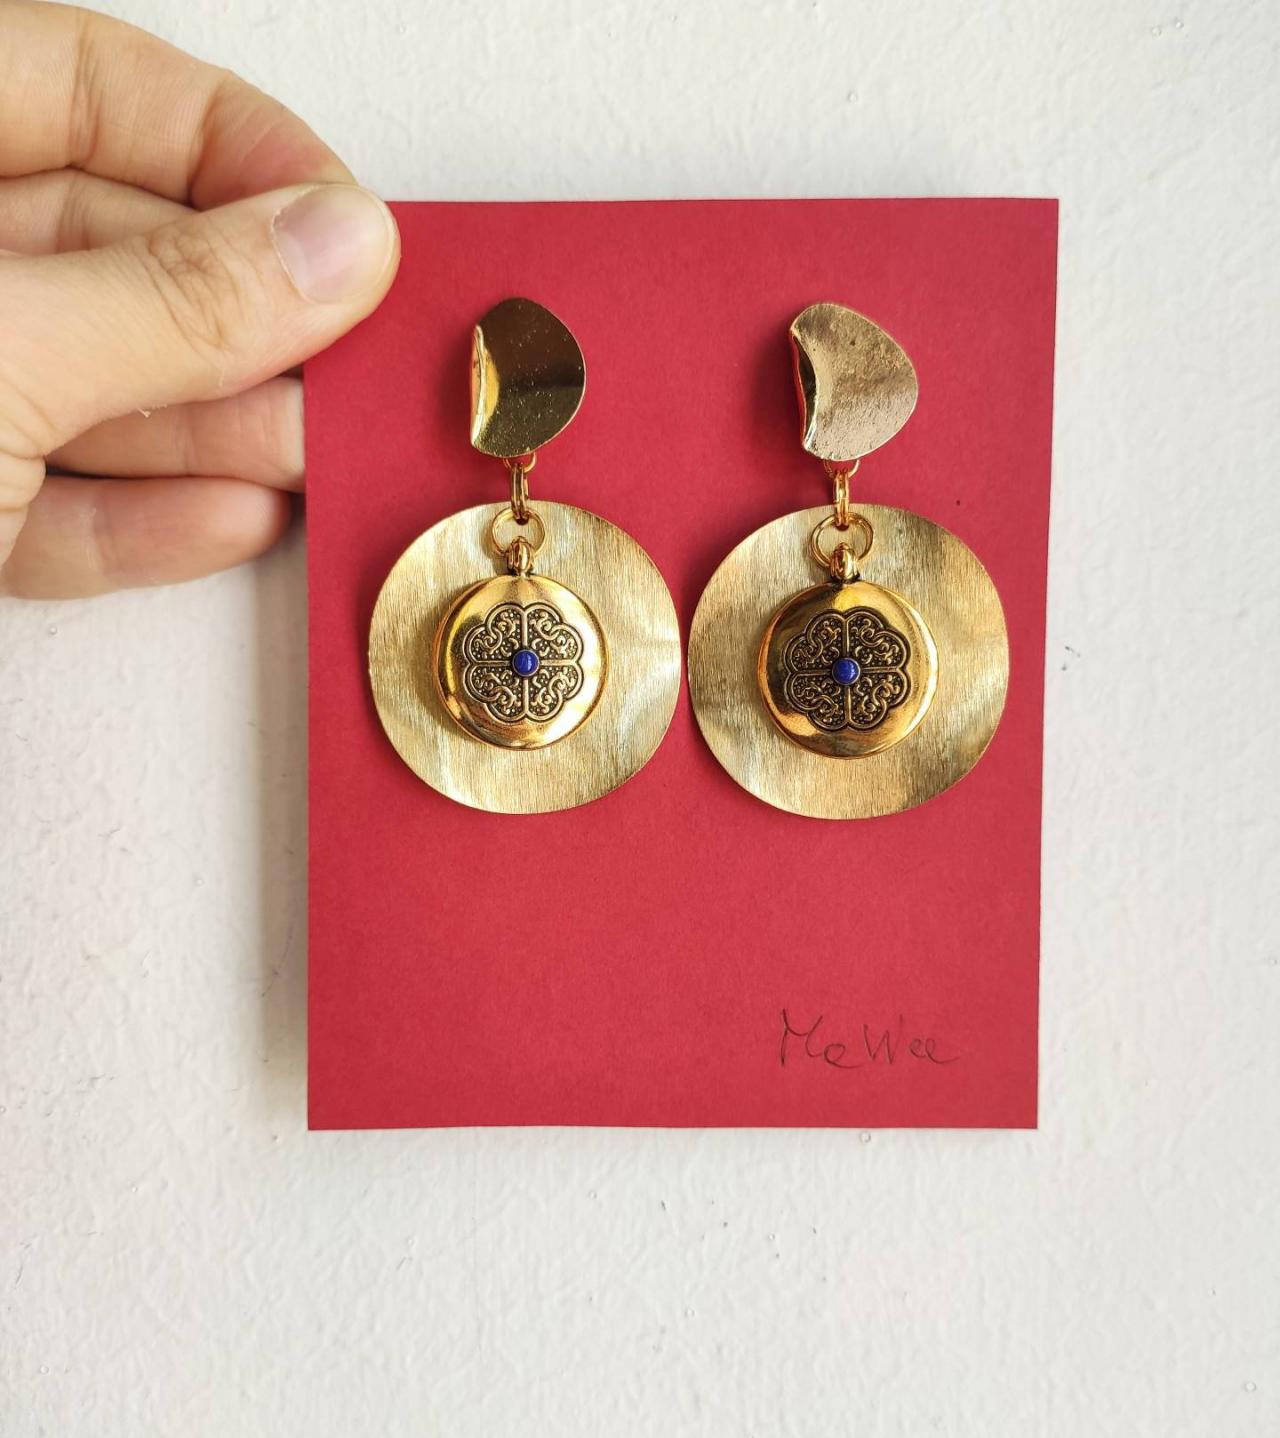 Earrings Golden Hoop In Brass,pendant Medallion Engraving Flower And Blue Stone. Brass Design